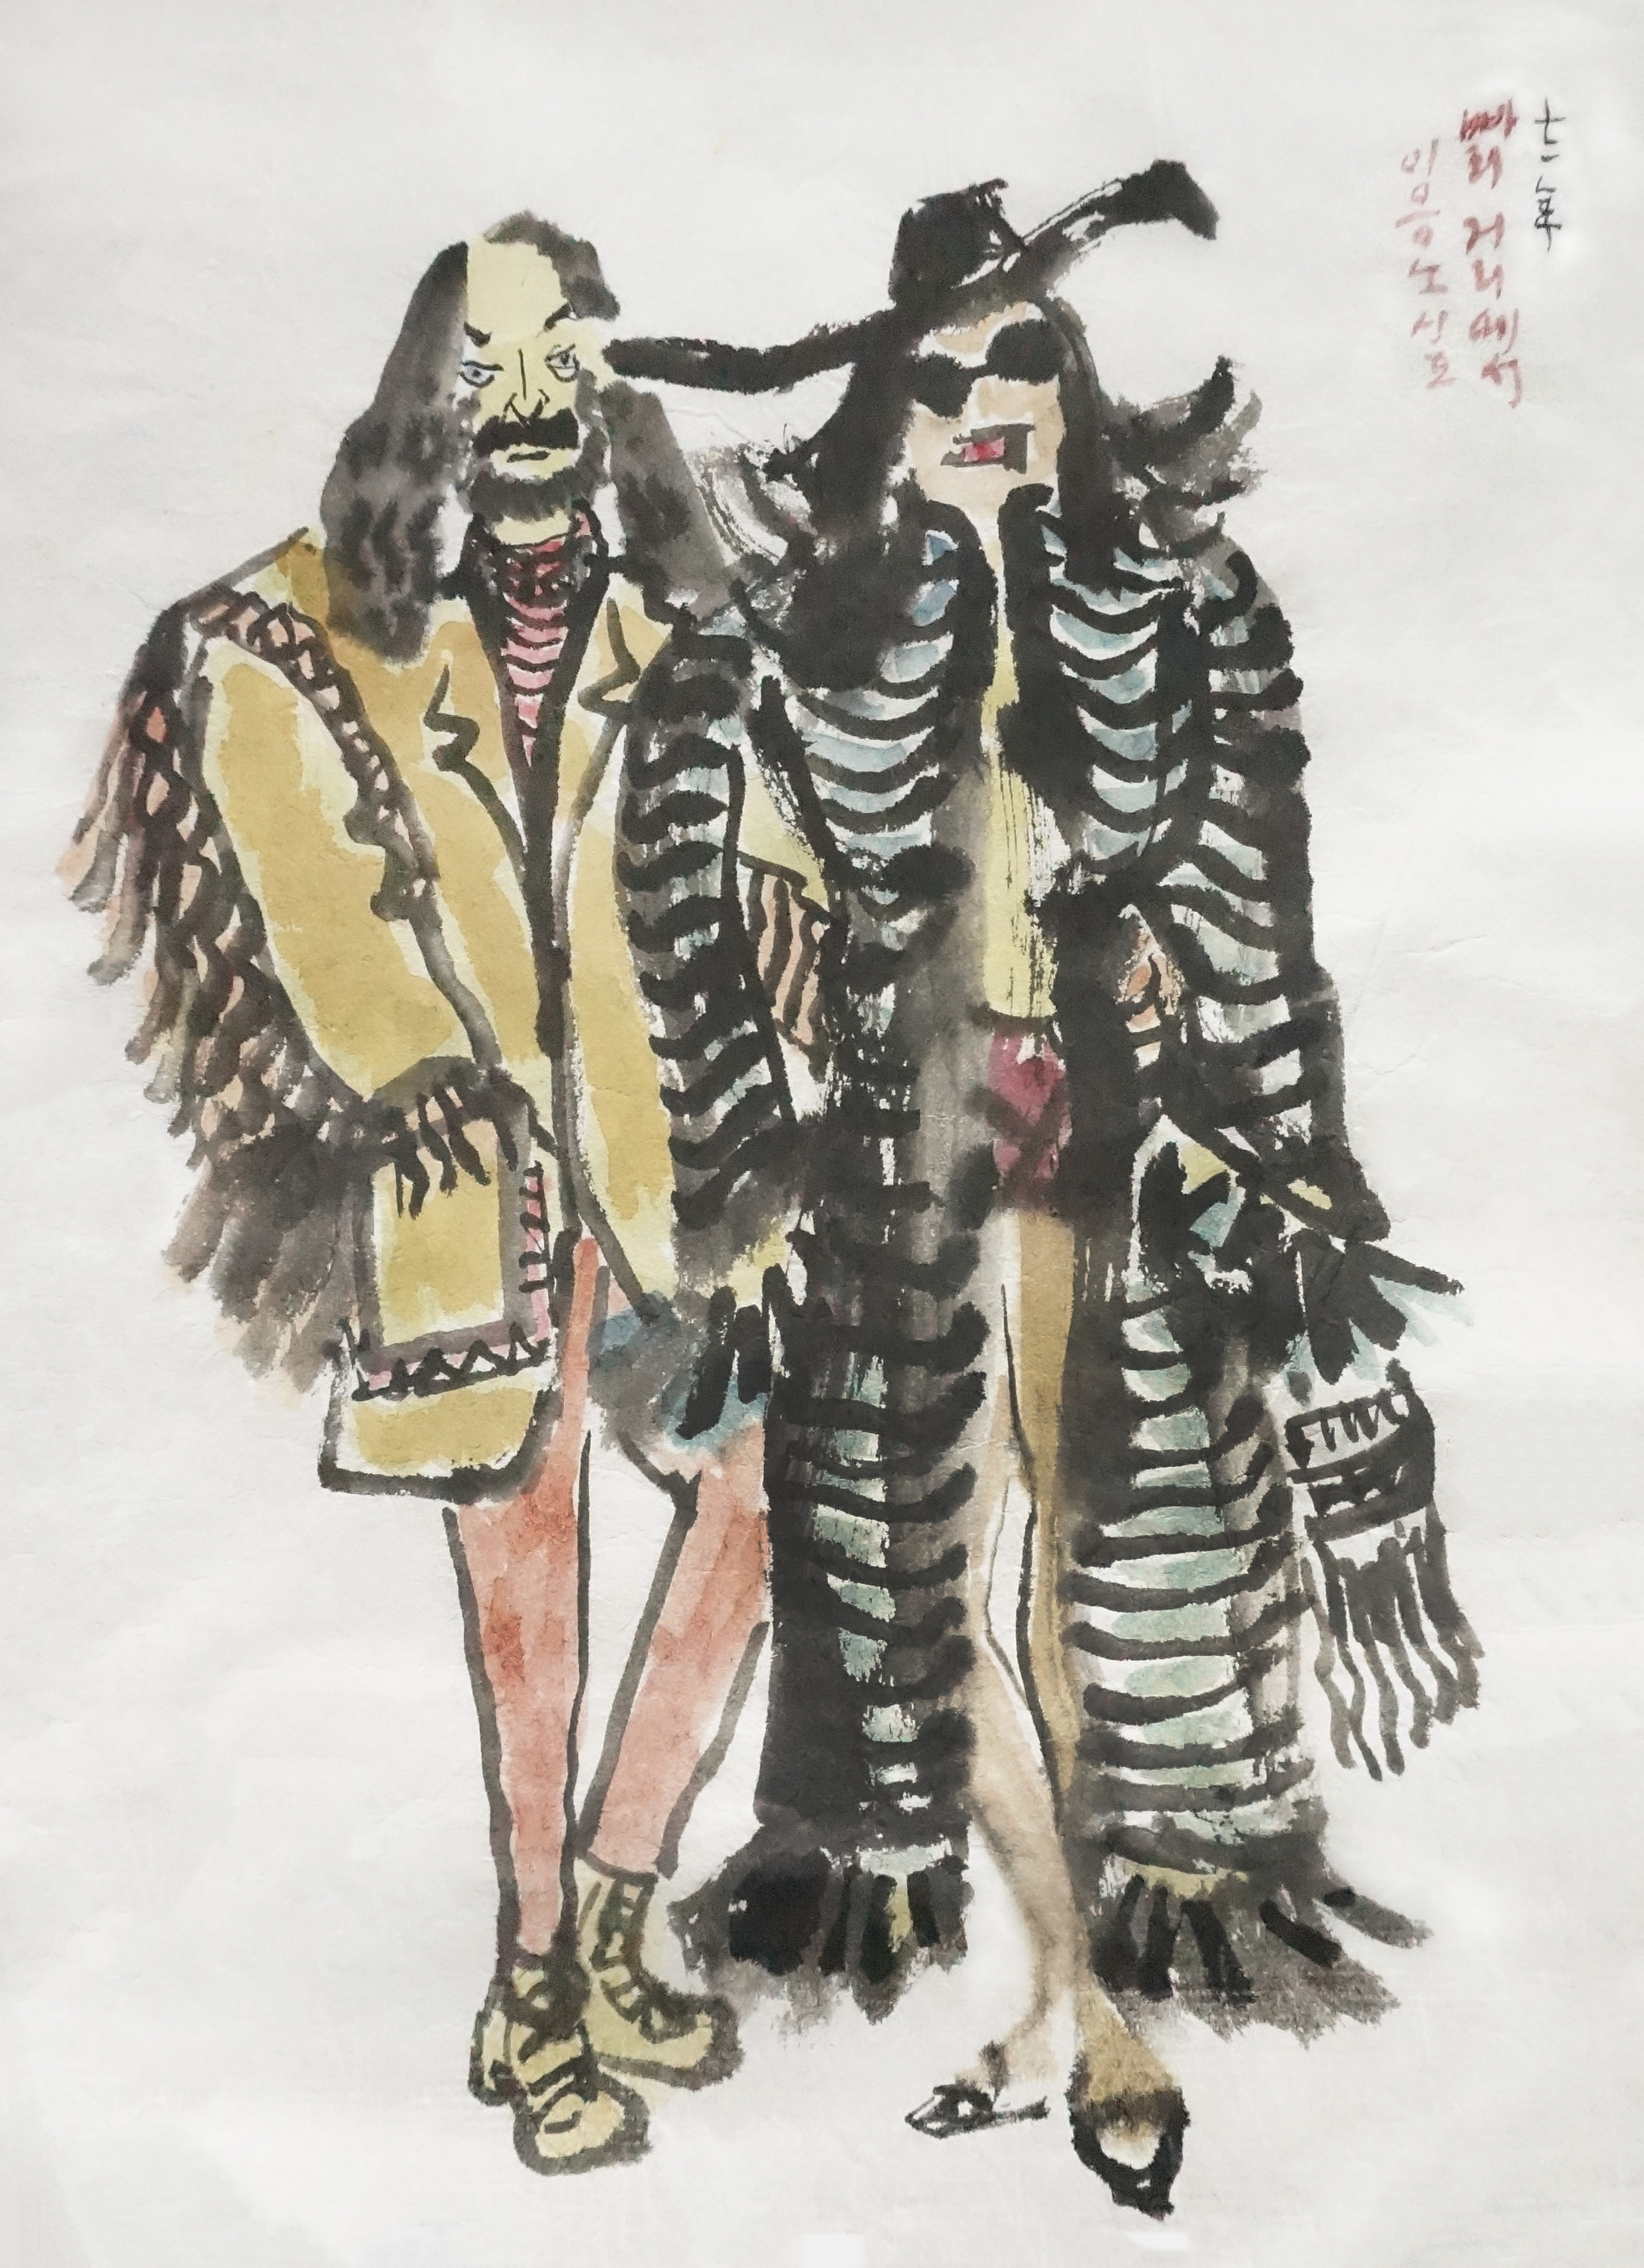 인물 스케치, 1971, 종이에 먹, 색, 27.4x35.4cm, 유족 소장